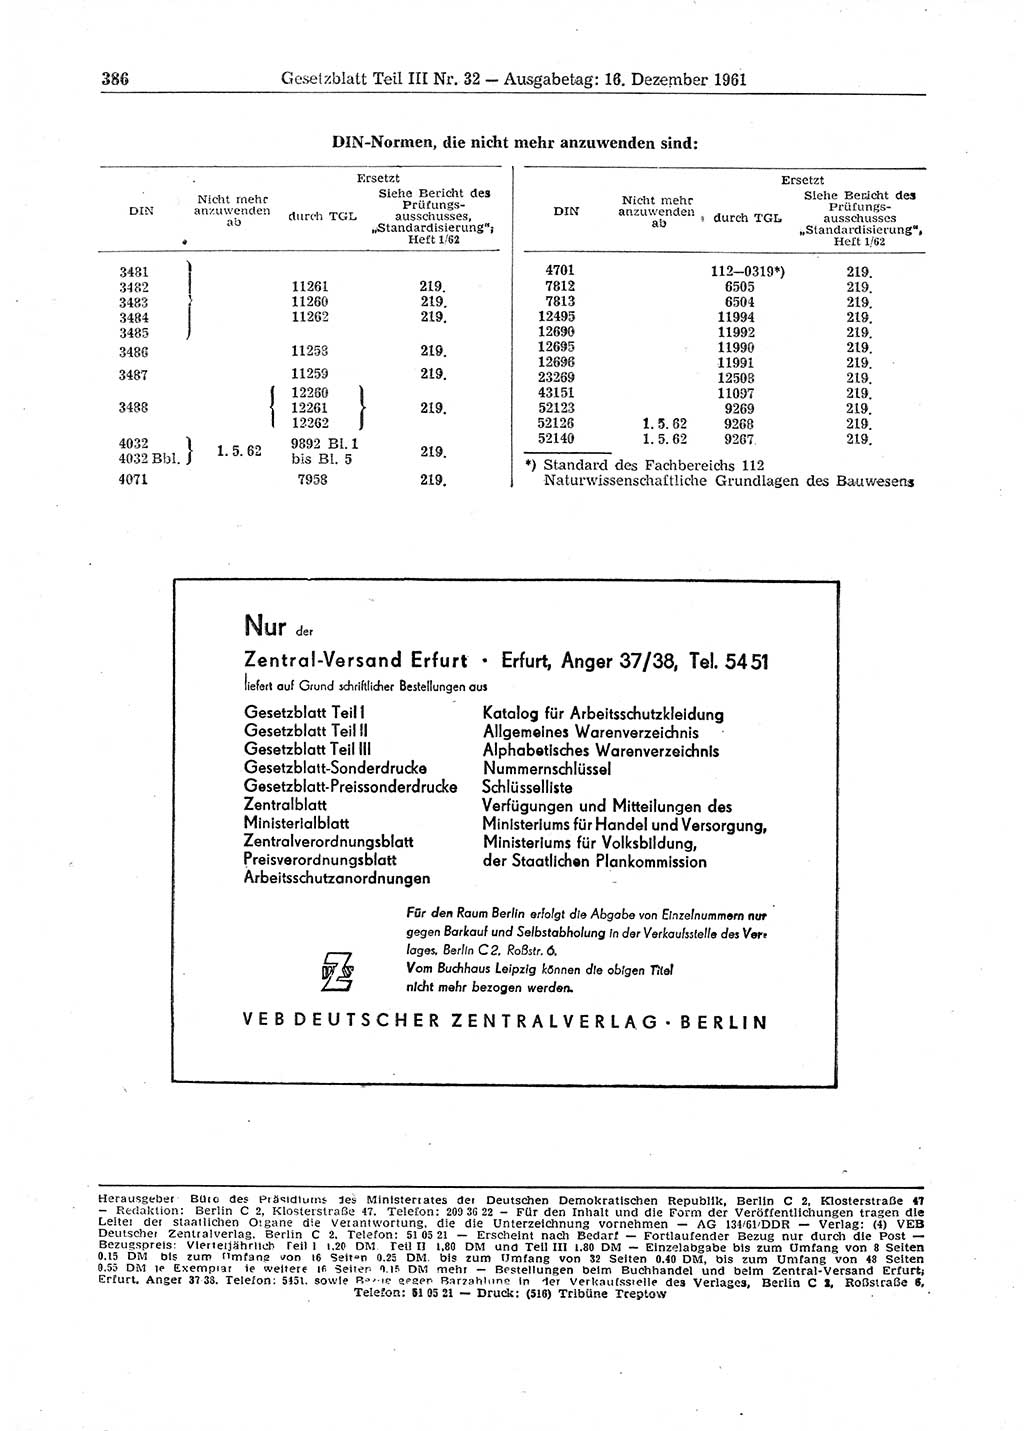 Gesetzblatt (GBl.) der Deutschen Demokratischen Republik (DDR) Teil ⅠⅠⅠ 1961, Seite 386 (GBl. DDR ⅠⅠⅠ 1961, S. 386)